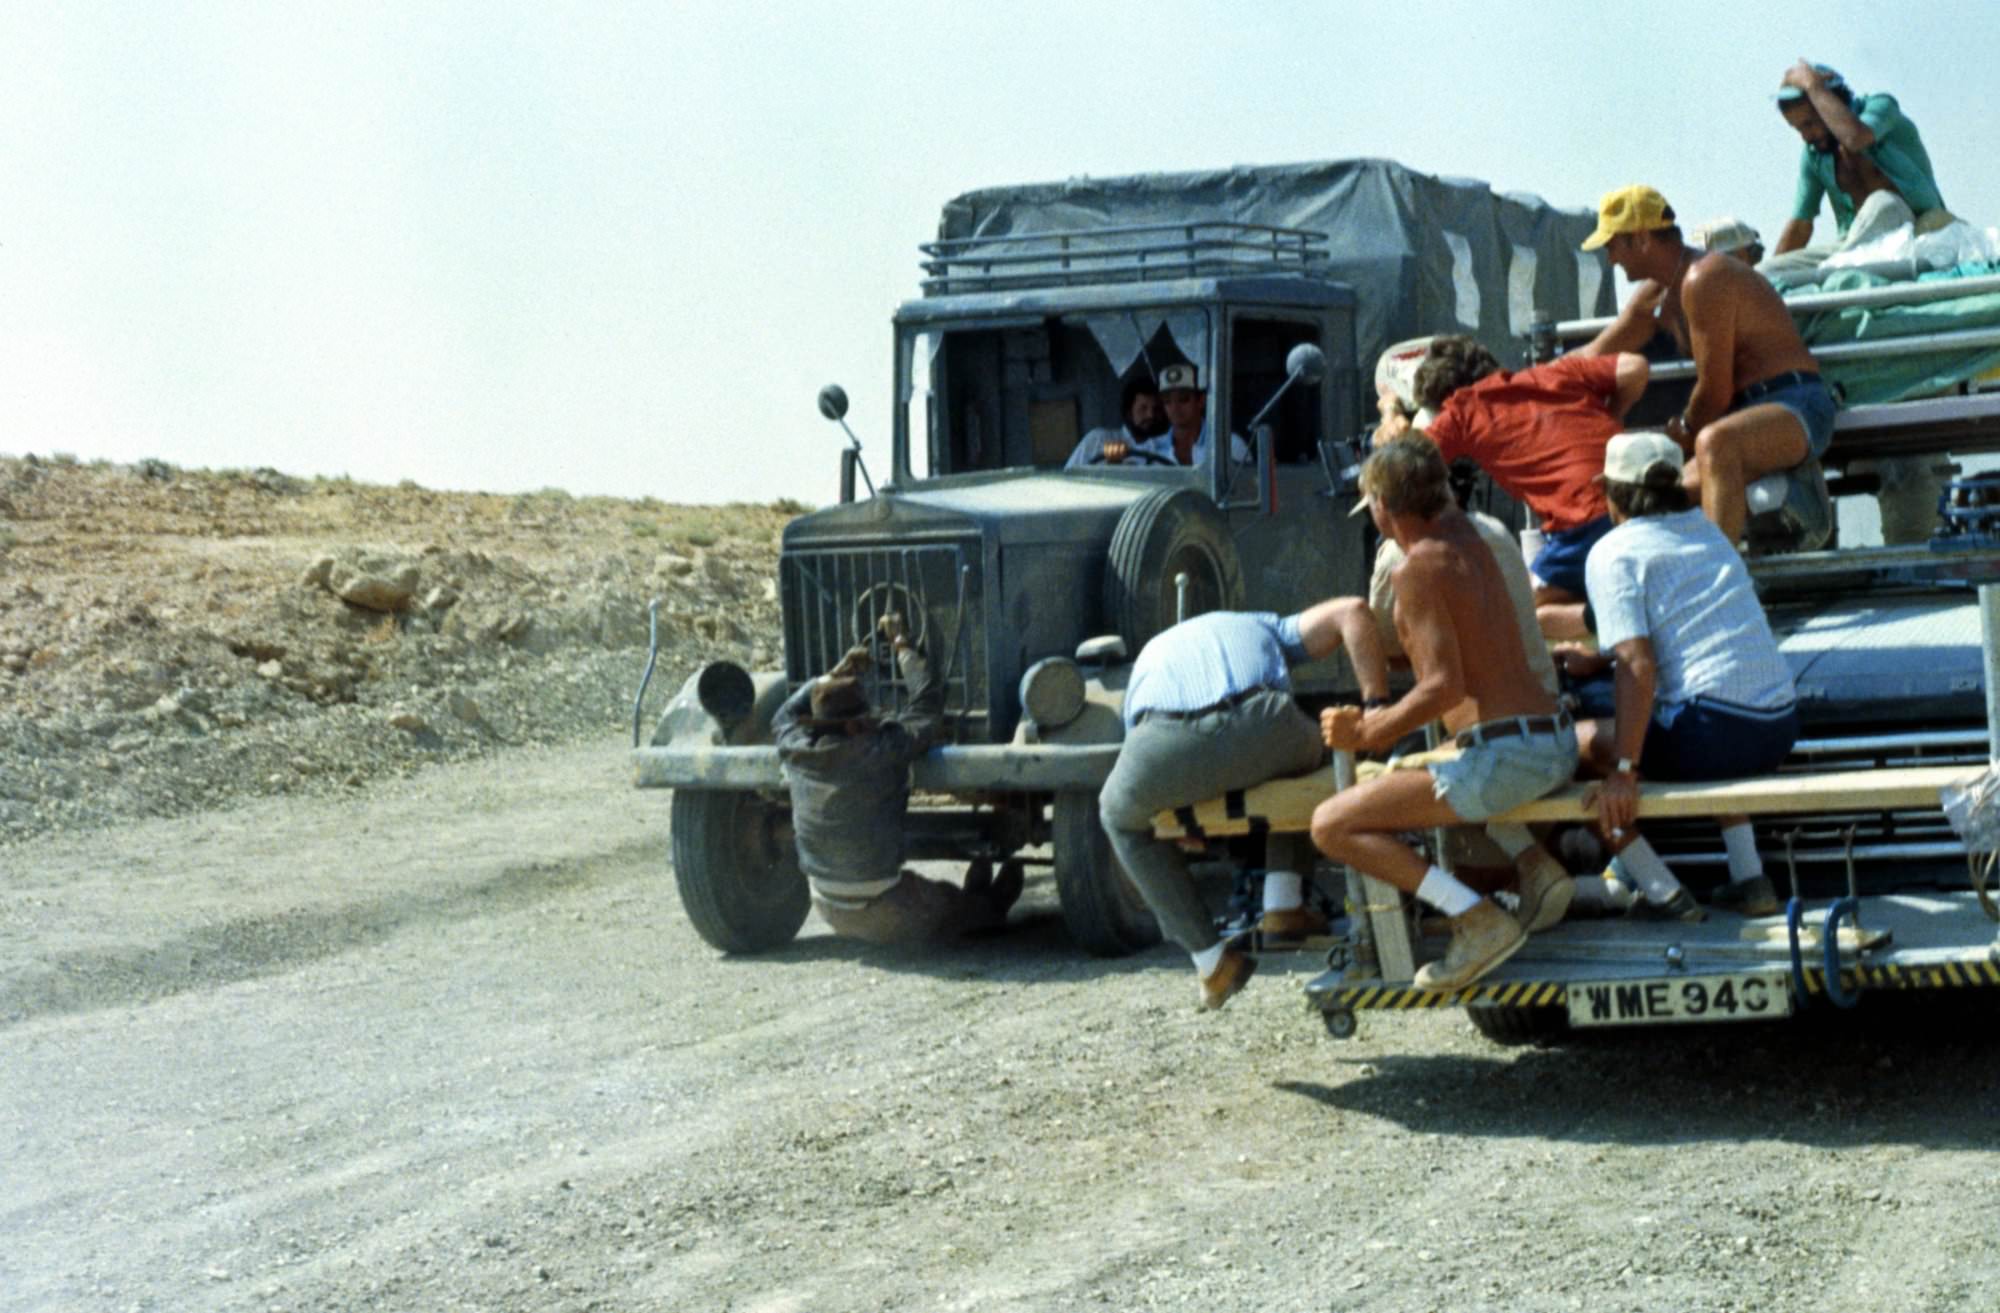 Die besten Action-Filme mit spektakulären Stunts: Das Bild zeigt ein Auto, an dem vorne ein Mann hängt und über die Straße geschleift wird. Daneben ist ein weiteres Auto, auf dem eine Gruppe Menschen sitzt